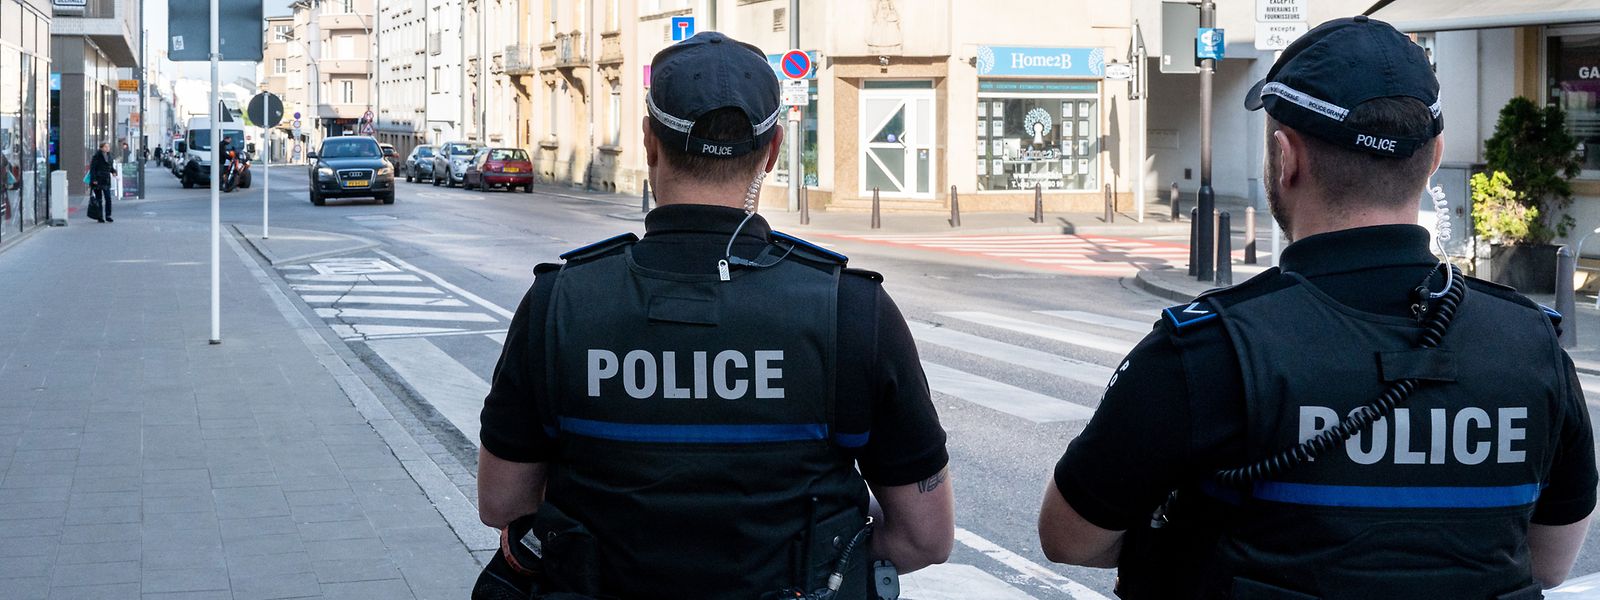 Les policiers français et luxembourgeois pourront poursuivre des malfaiteurs dans le pays voisin, tout en informant les forces de l'ordre de celui-ci préalablement.